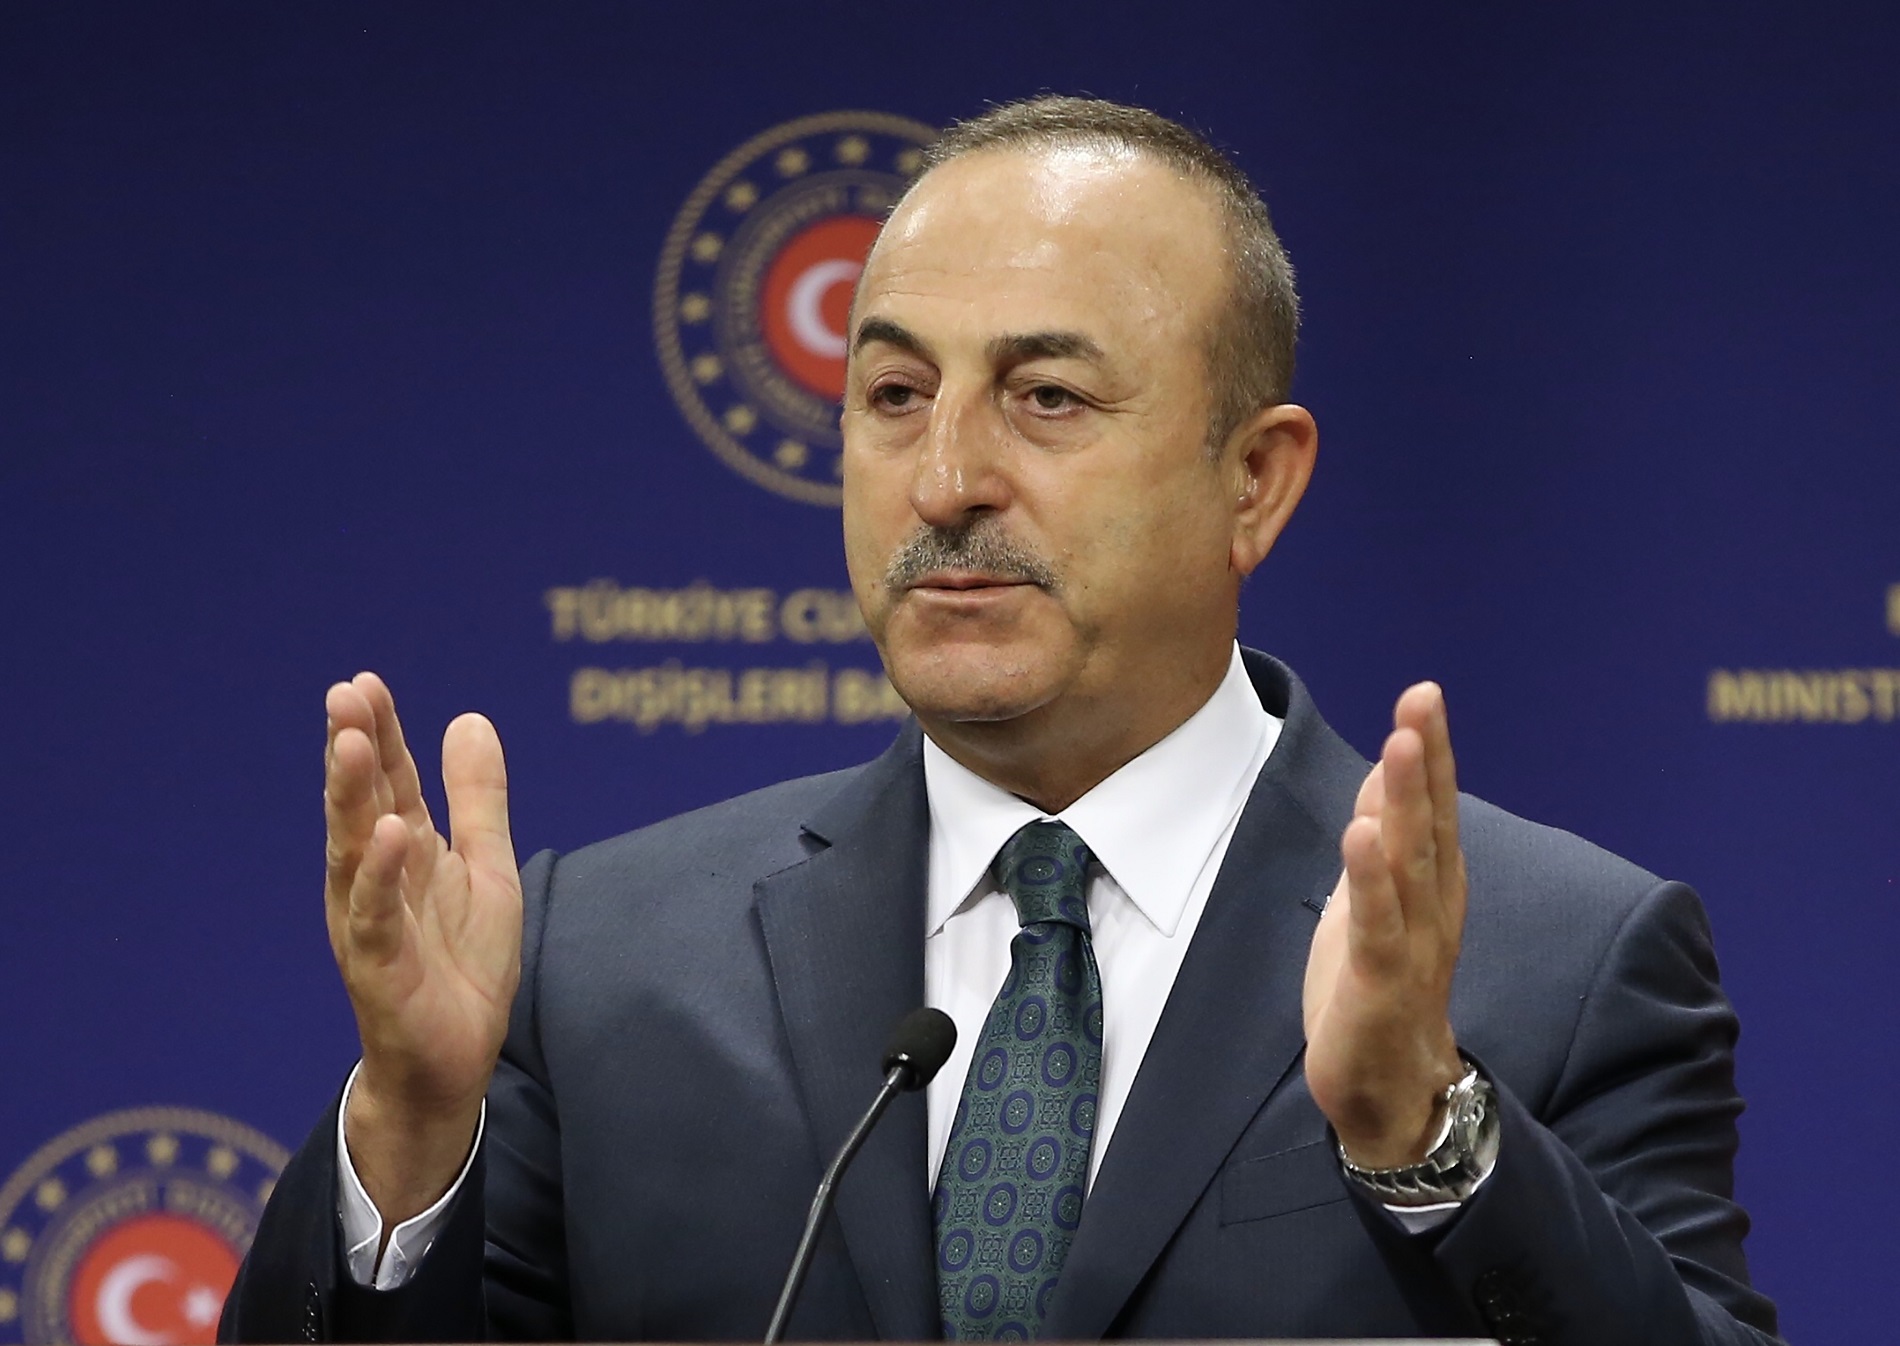 Çavuşoğlu: "Tenemos una ventana de oportunidad para un diálogo renovado entre Turquía y la UE"